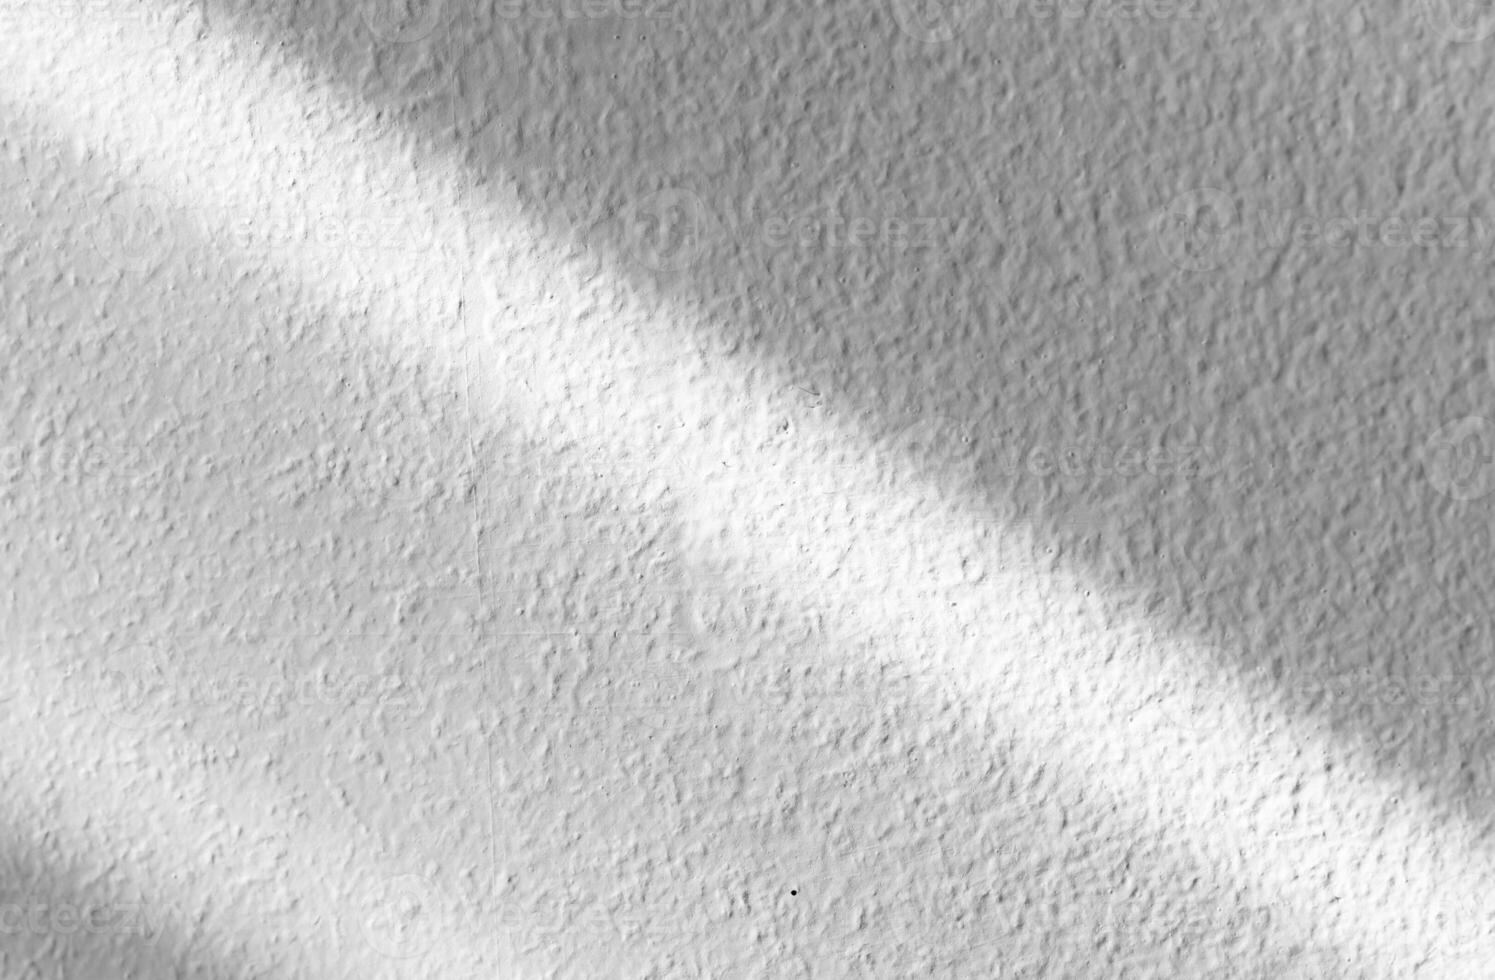 bianca parete cemento ruvido struttura fondo, fondale camera Schermo con ombra a strisce diagonale luce del sole riflessione, grigio studio sfondo con luce del sole diagonale effetto copertura su calcestruzzo pavimento foto